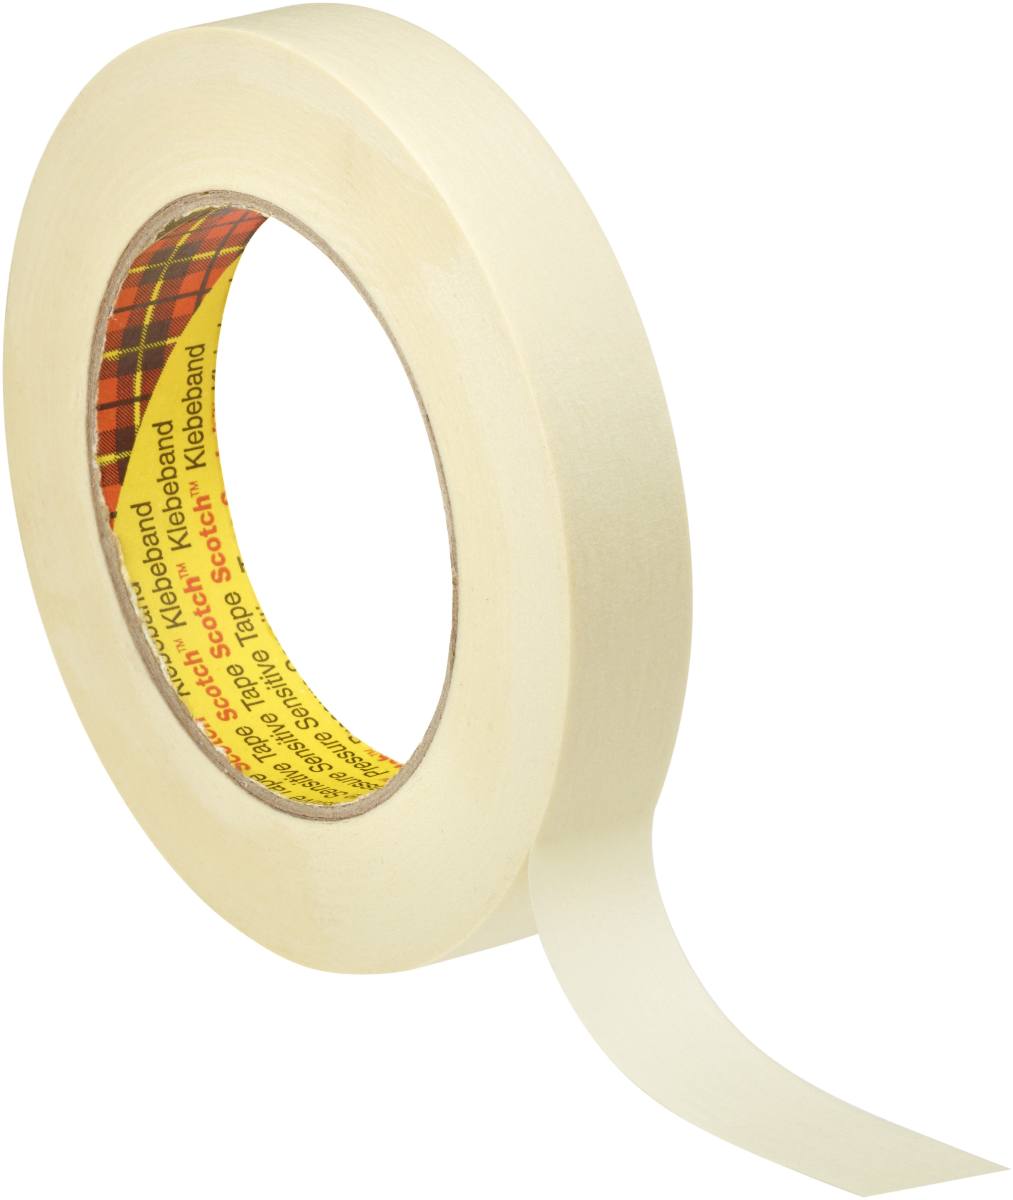 3M Scotch masking tape P3650, 36 mm x 50 m